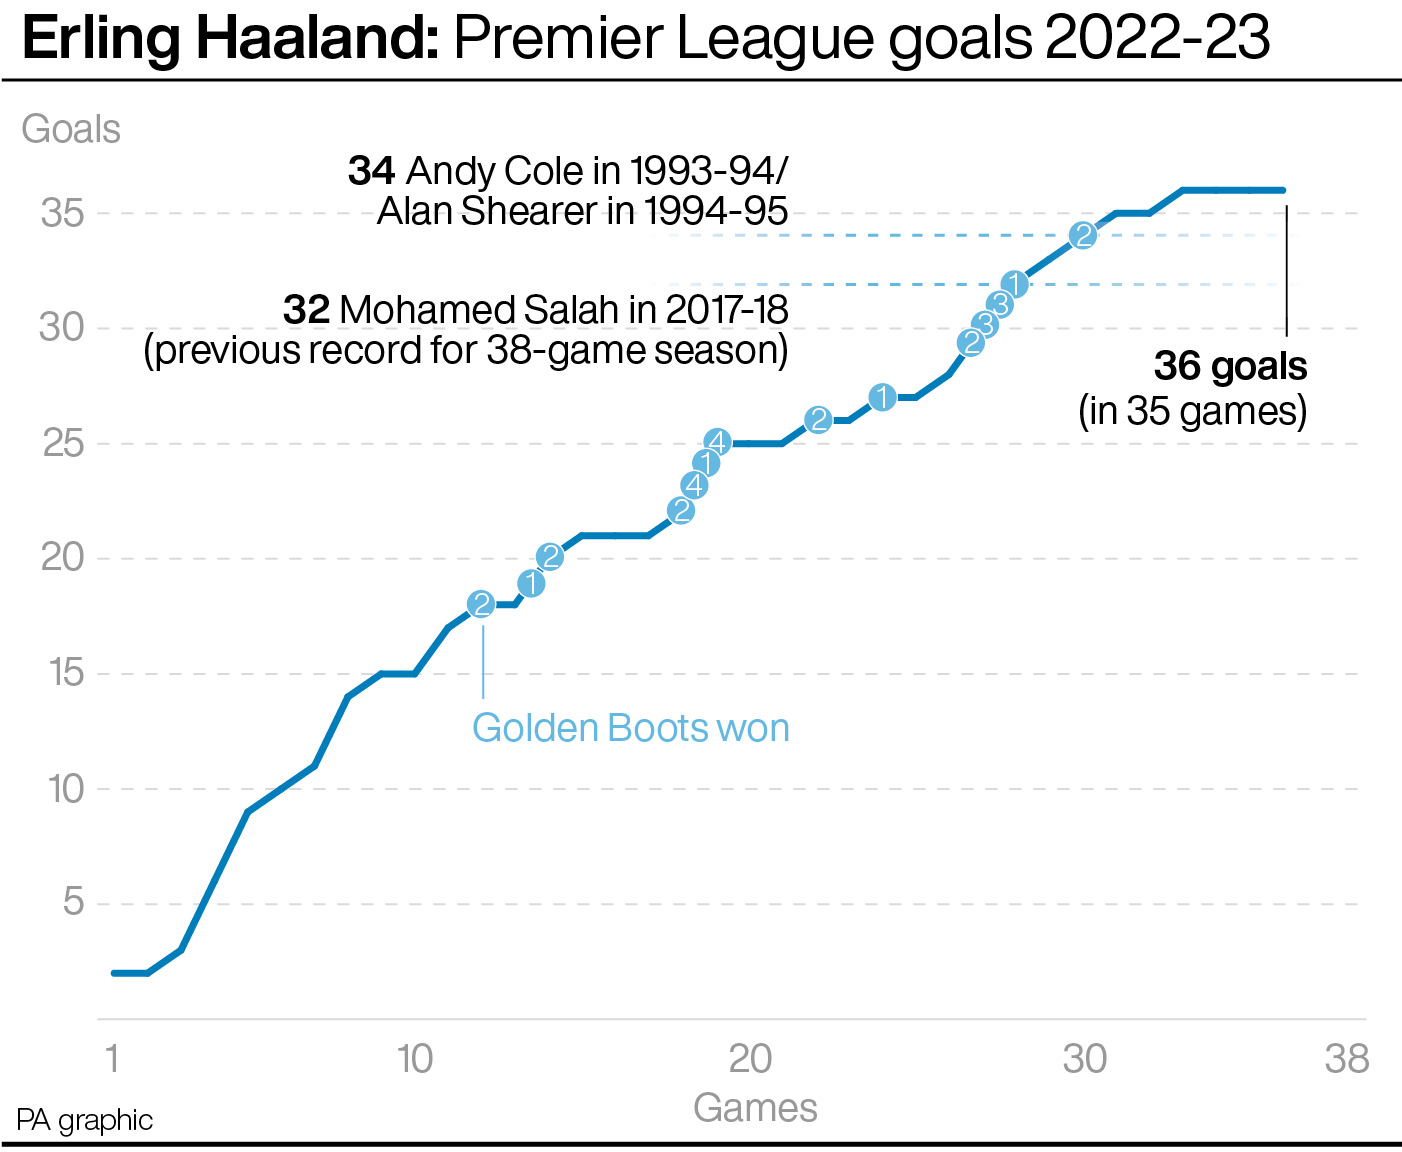 Erling Haaland's 2022-23 Premier League goals versus previous Golden Boot winners